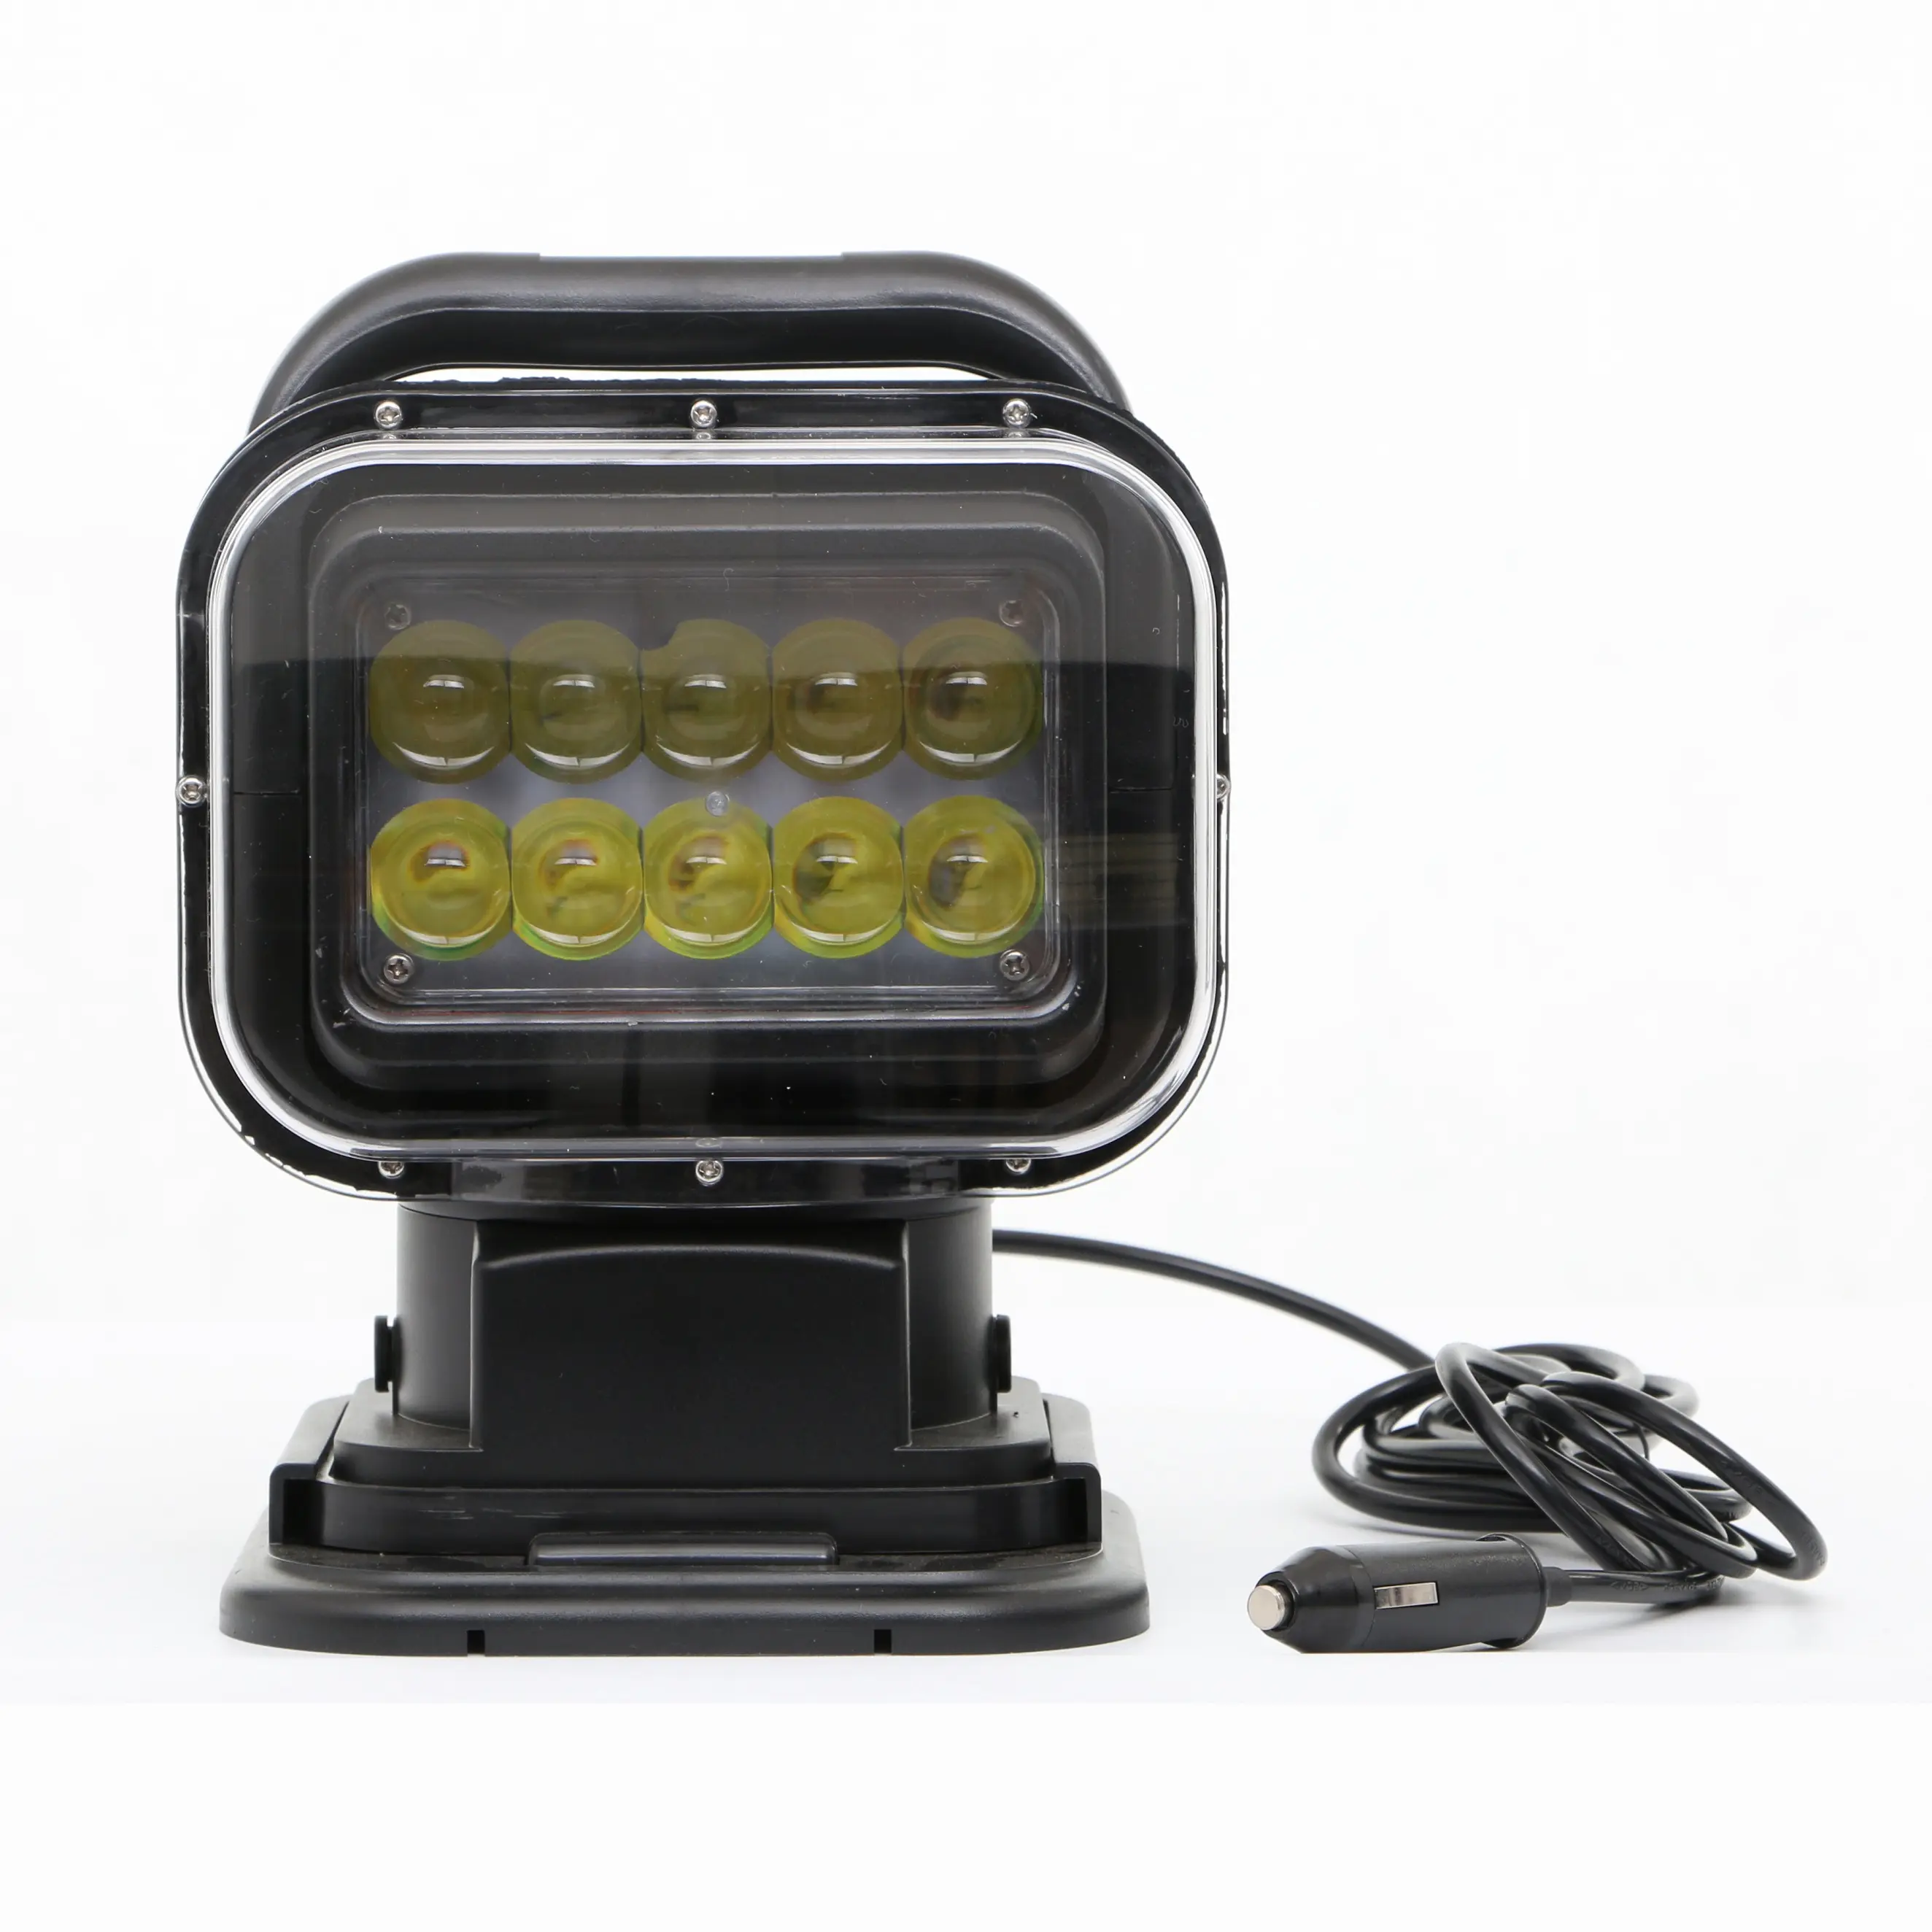 7 "50w LED-Suchscheinwerfer 360-Grad-rotierende Marine-Fernbedienung Spot LED-Arbeit Fahr lichter Nebel für Auto-SUV-Boot